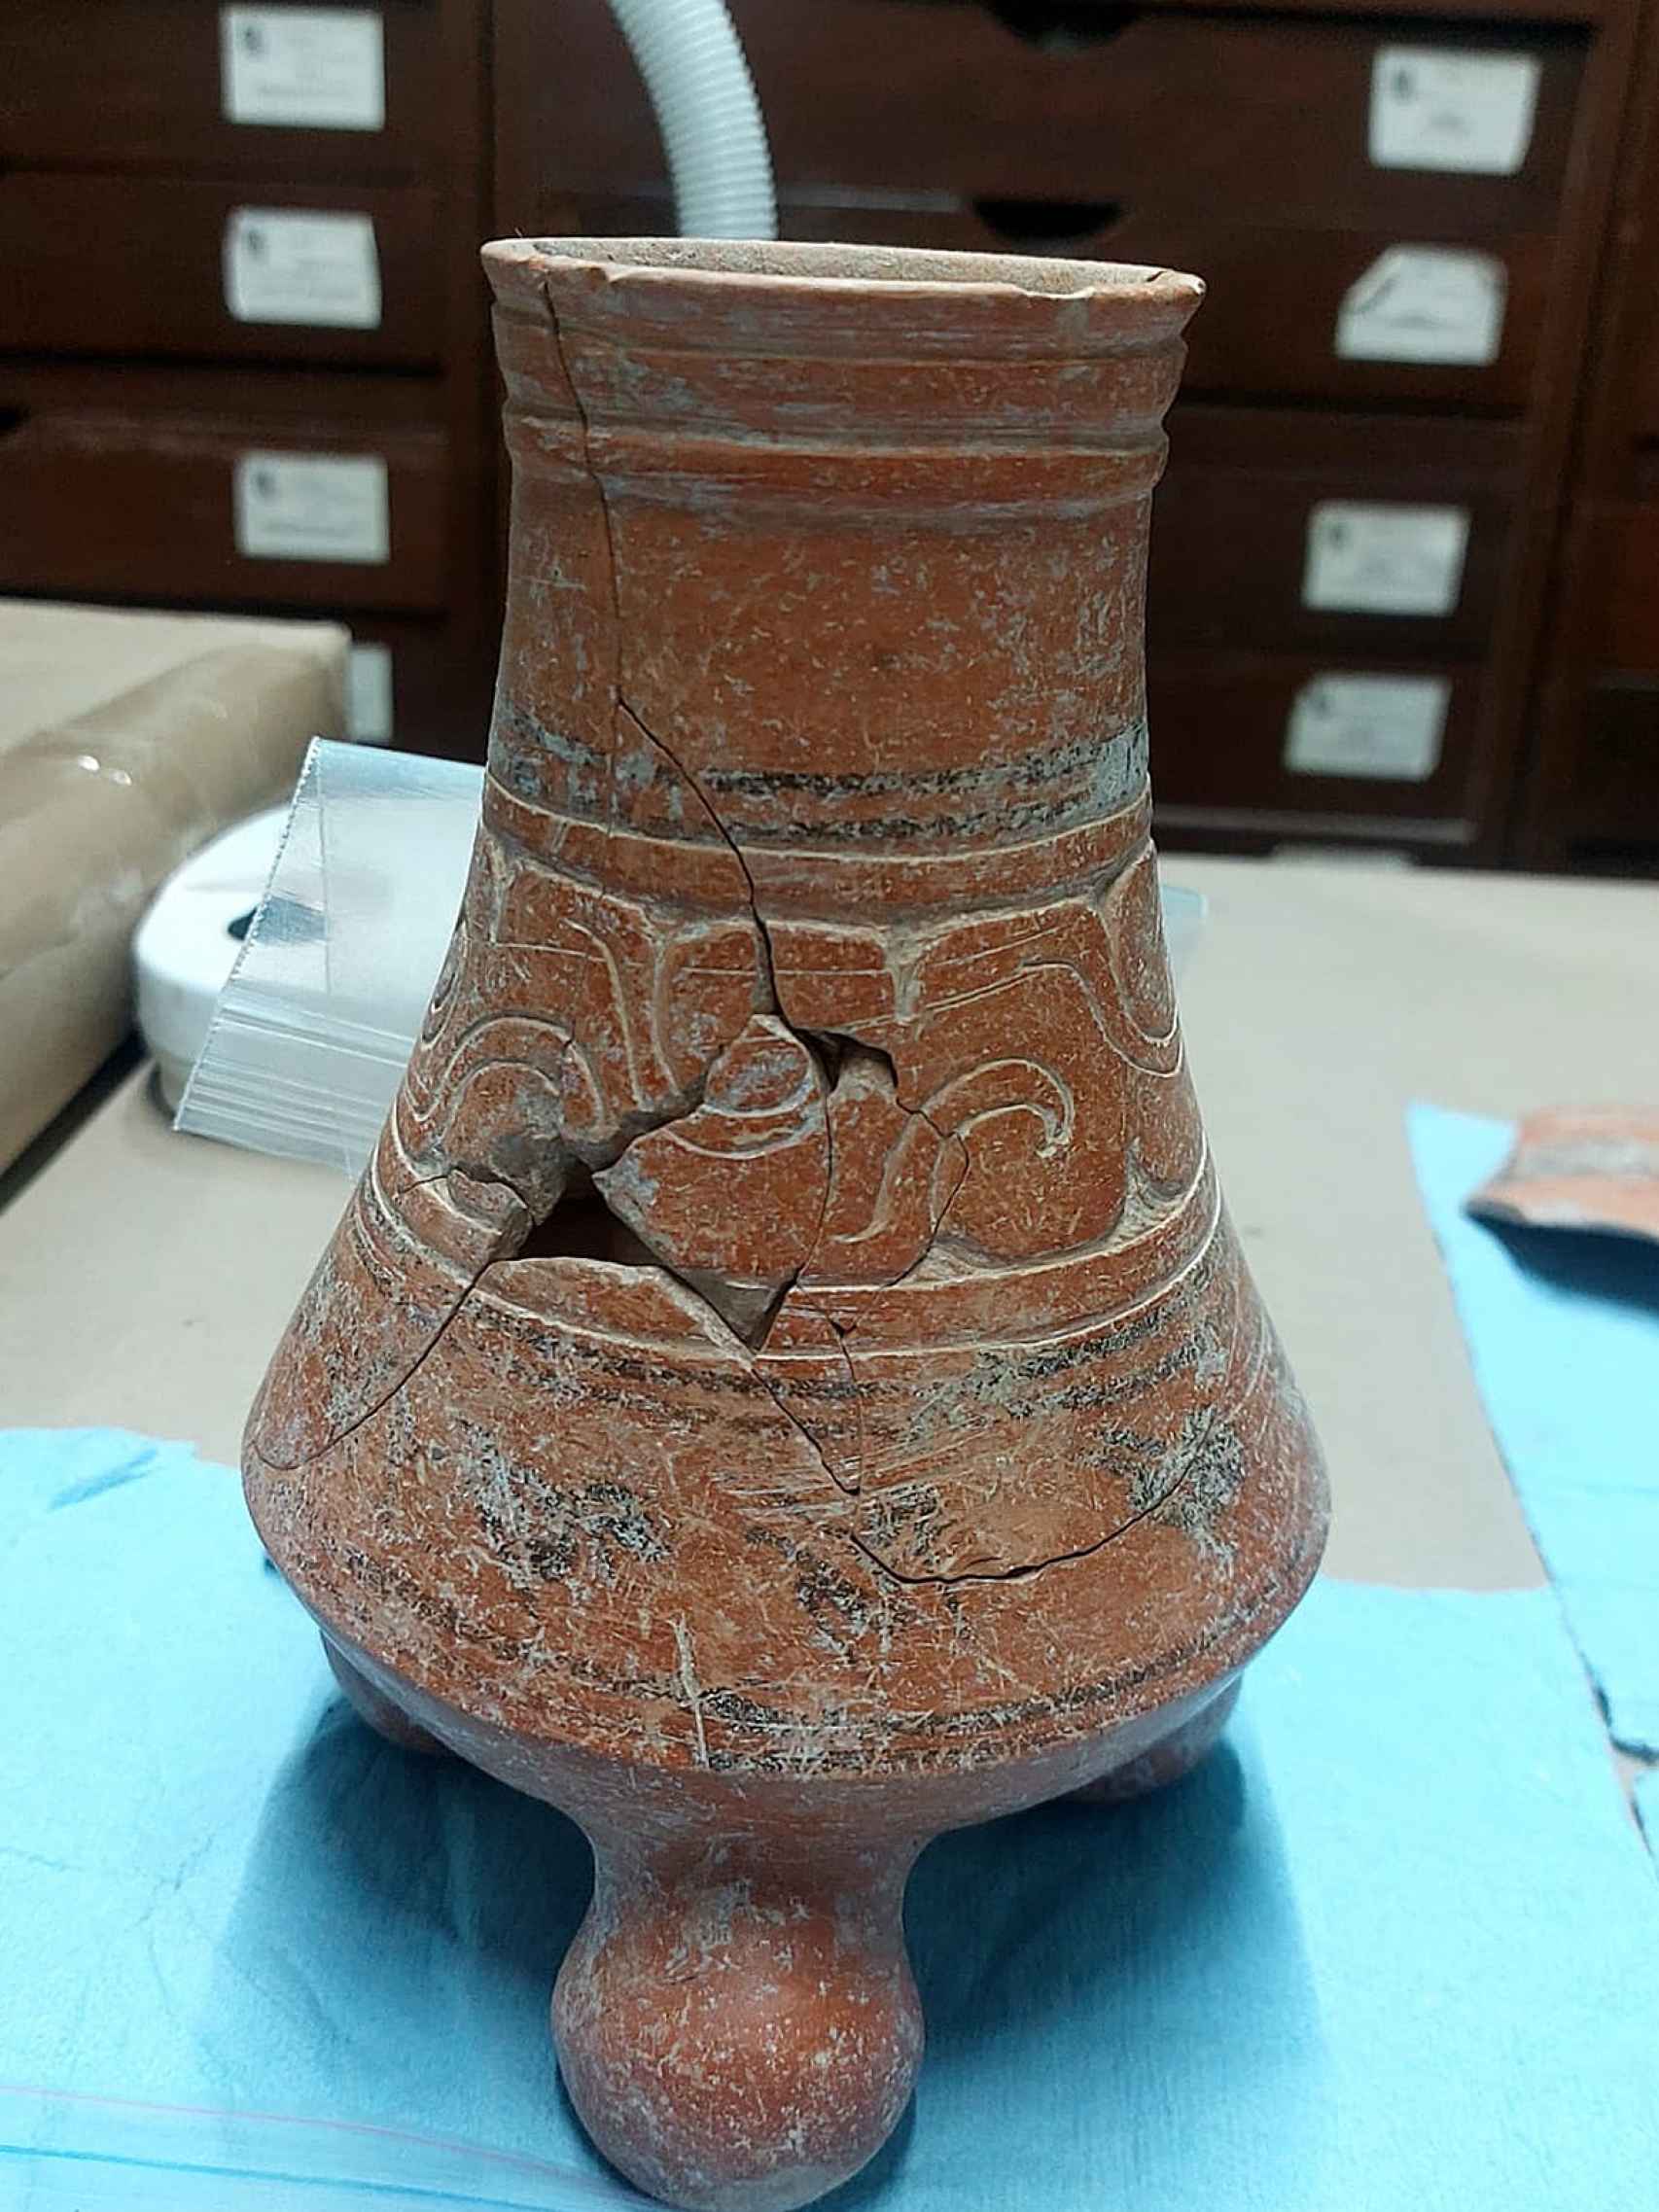 Otra de las cerámicas descuiertas